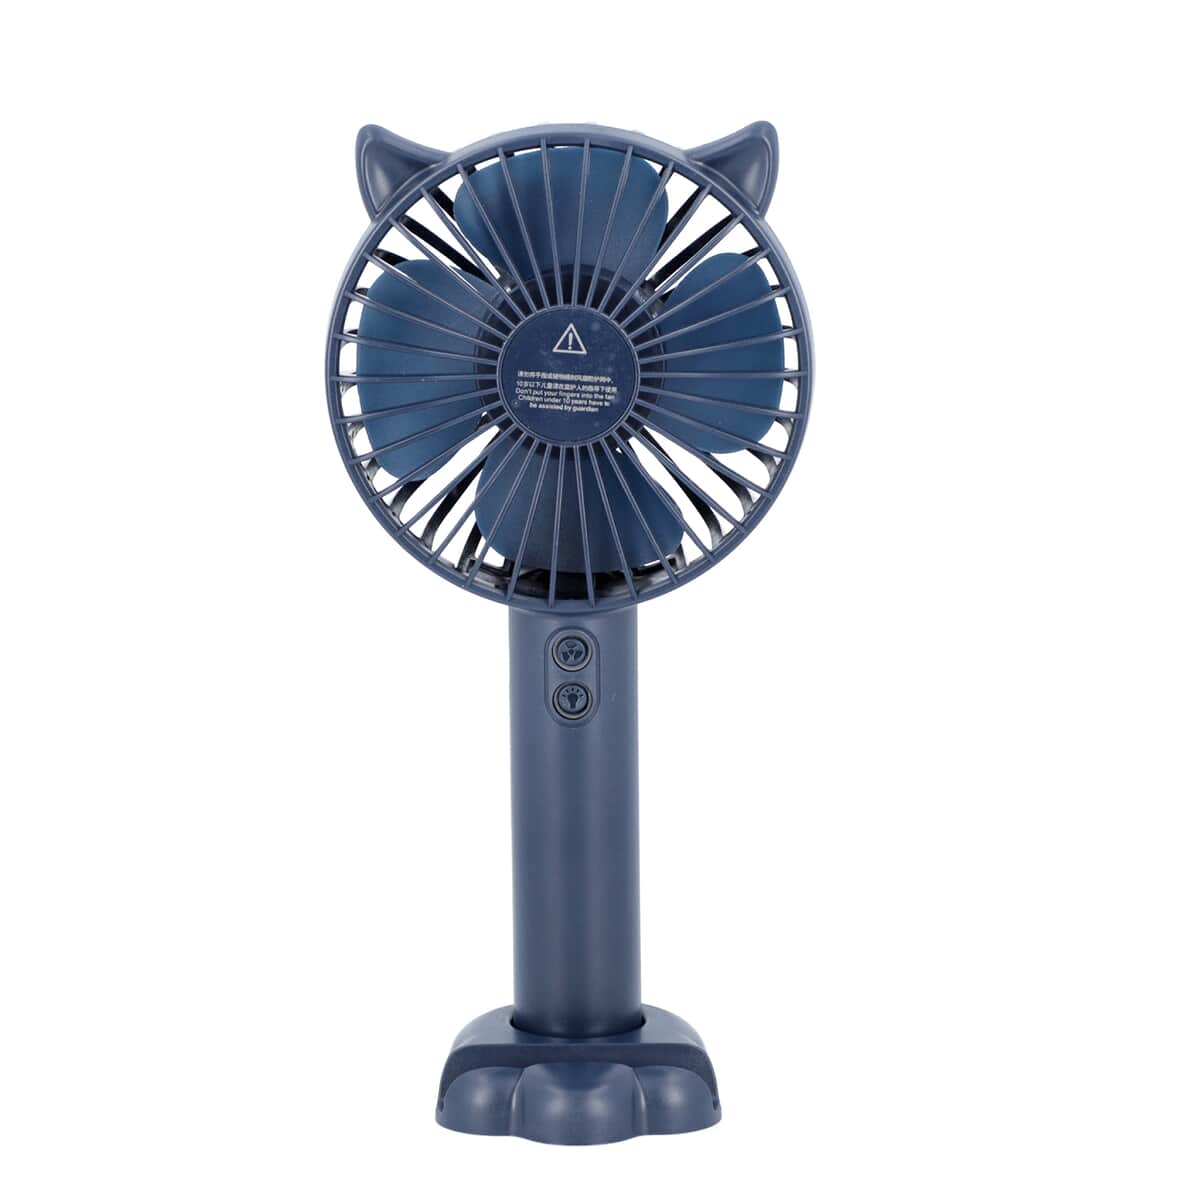 Rechargeable Handheld Fan with 3 Speed Control and LED Light - Blue | Portable Fan | Desk Fan | Mini Fan | Personal Fan image number 0